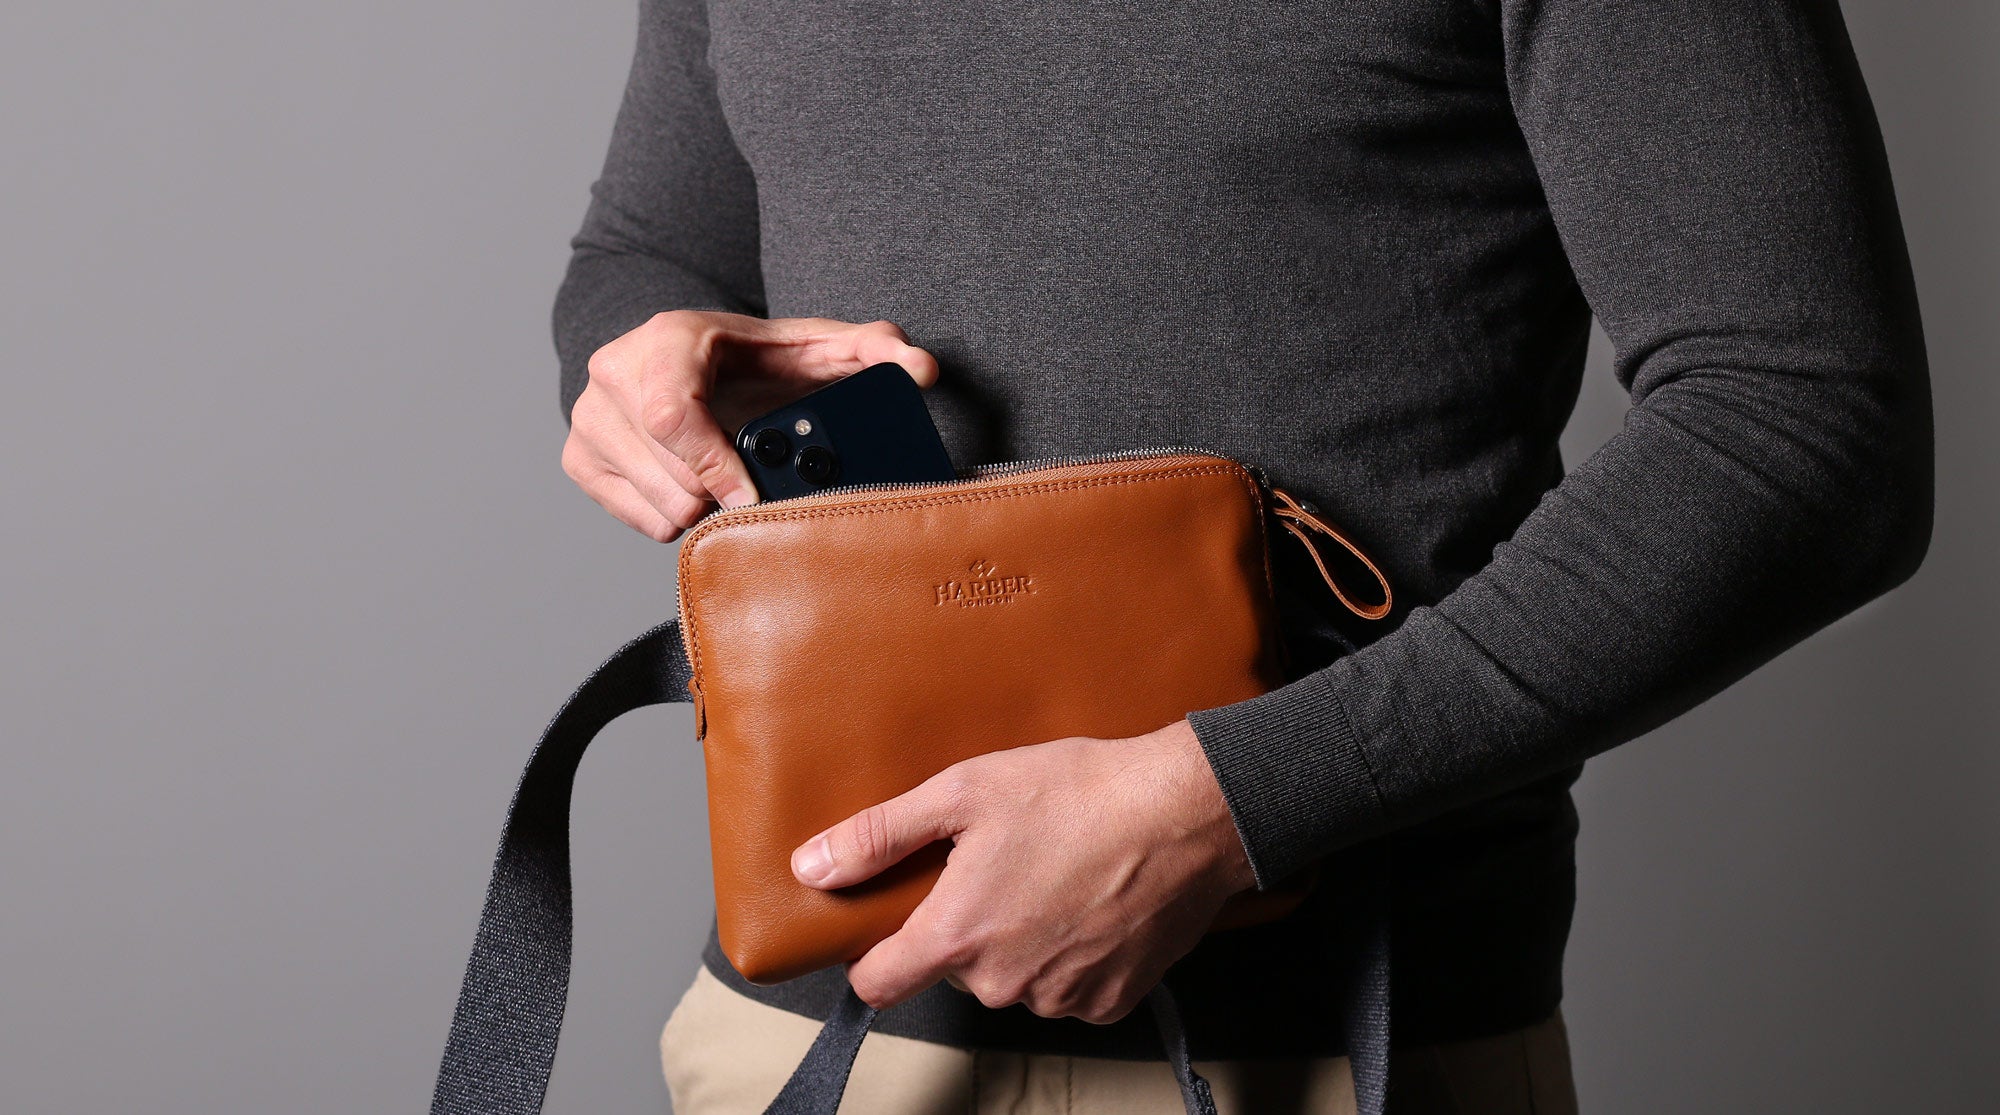 Bolso bandolera de piel, perfecto para llevar iPhone, carteras y mucho más.